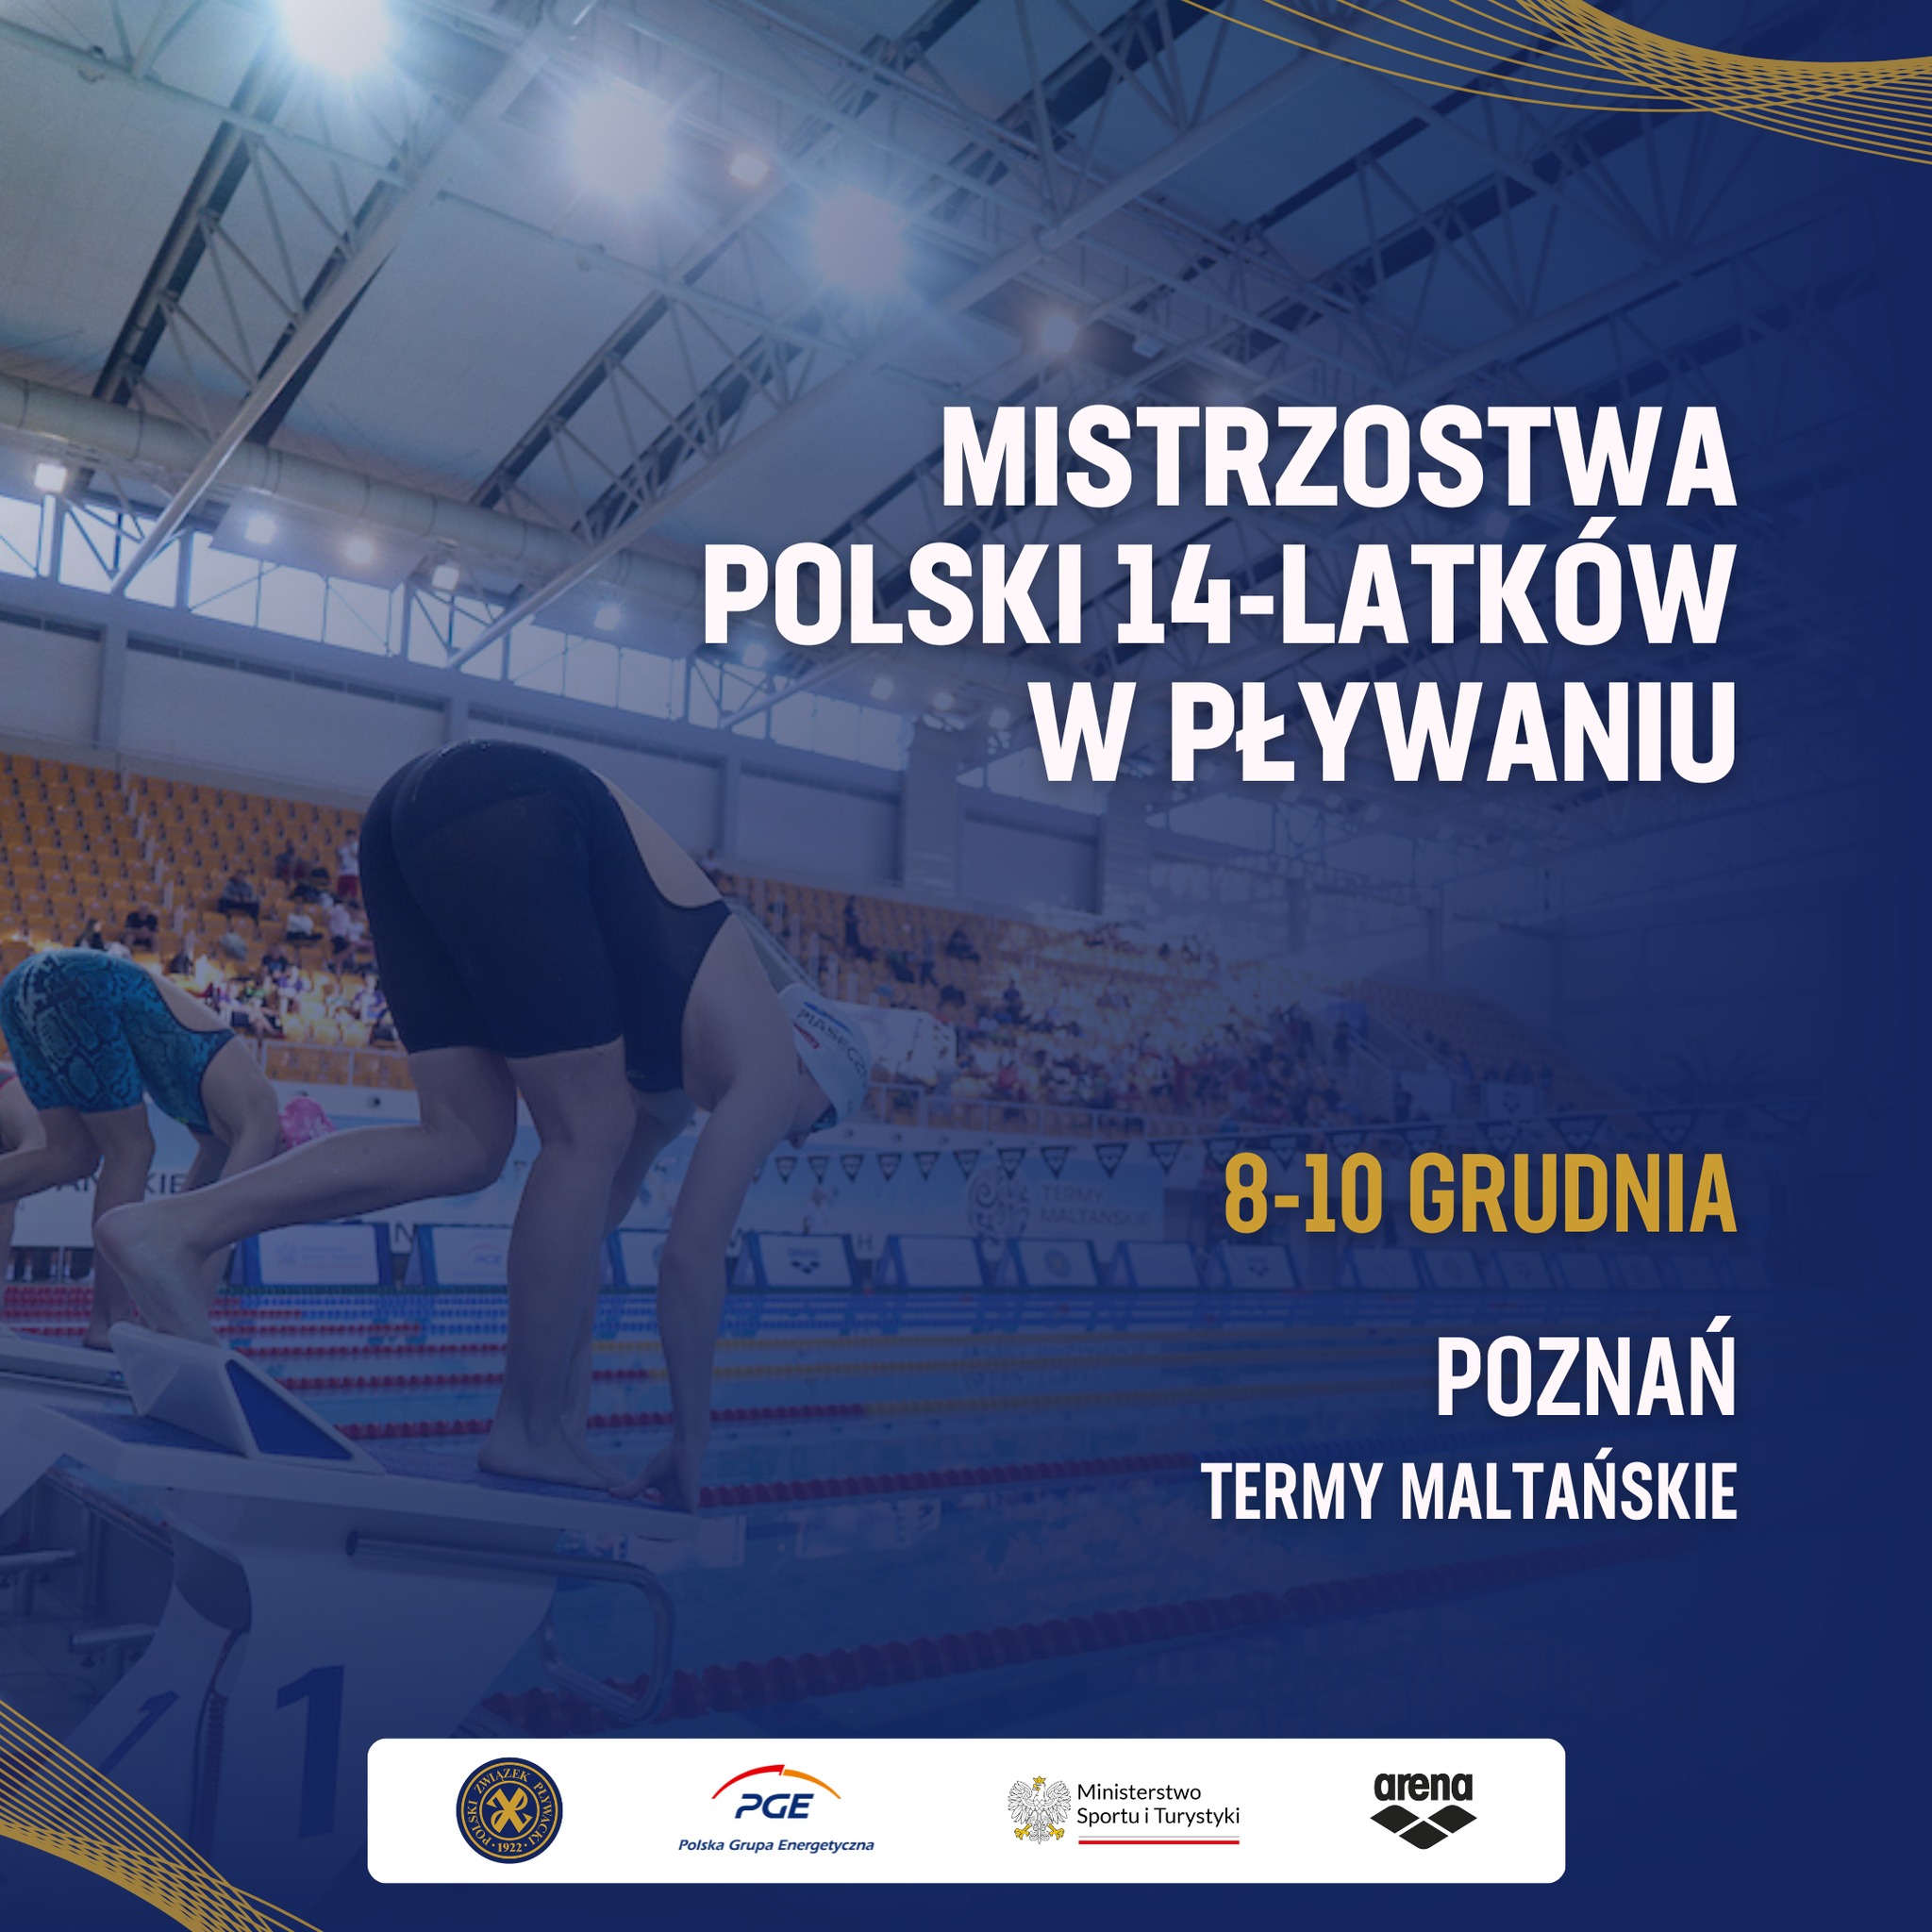  Mistrzostwa Polski 14-latków w pływaniu